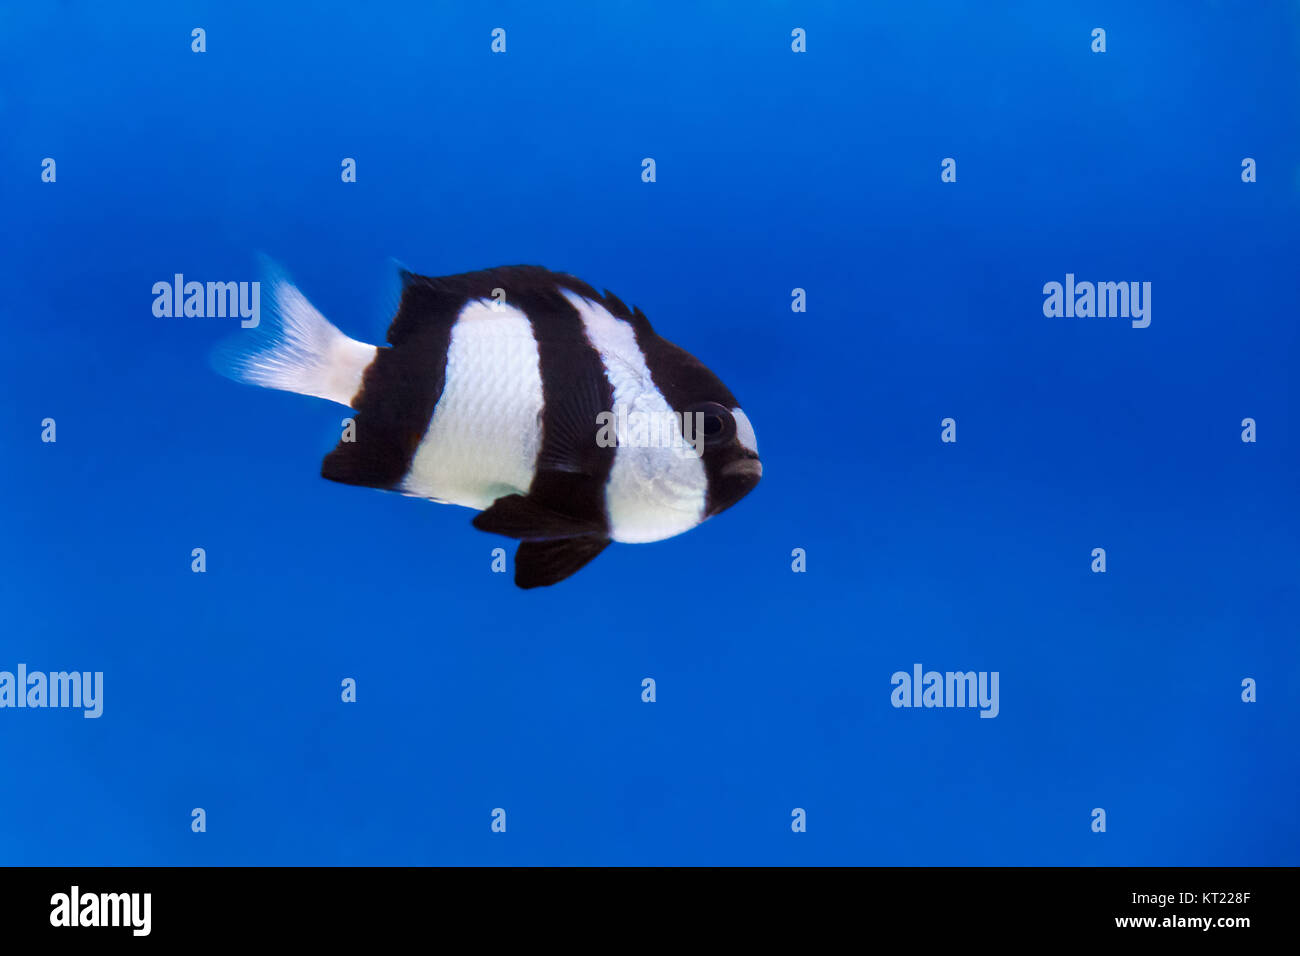 One black and white dascyllus trimaculatus fish in aquarium tank Stock Photo